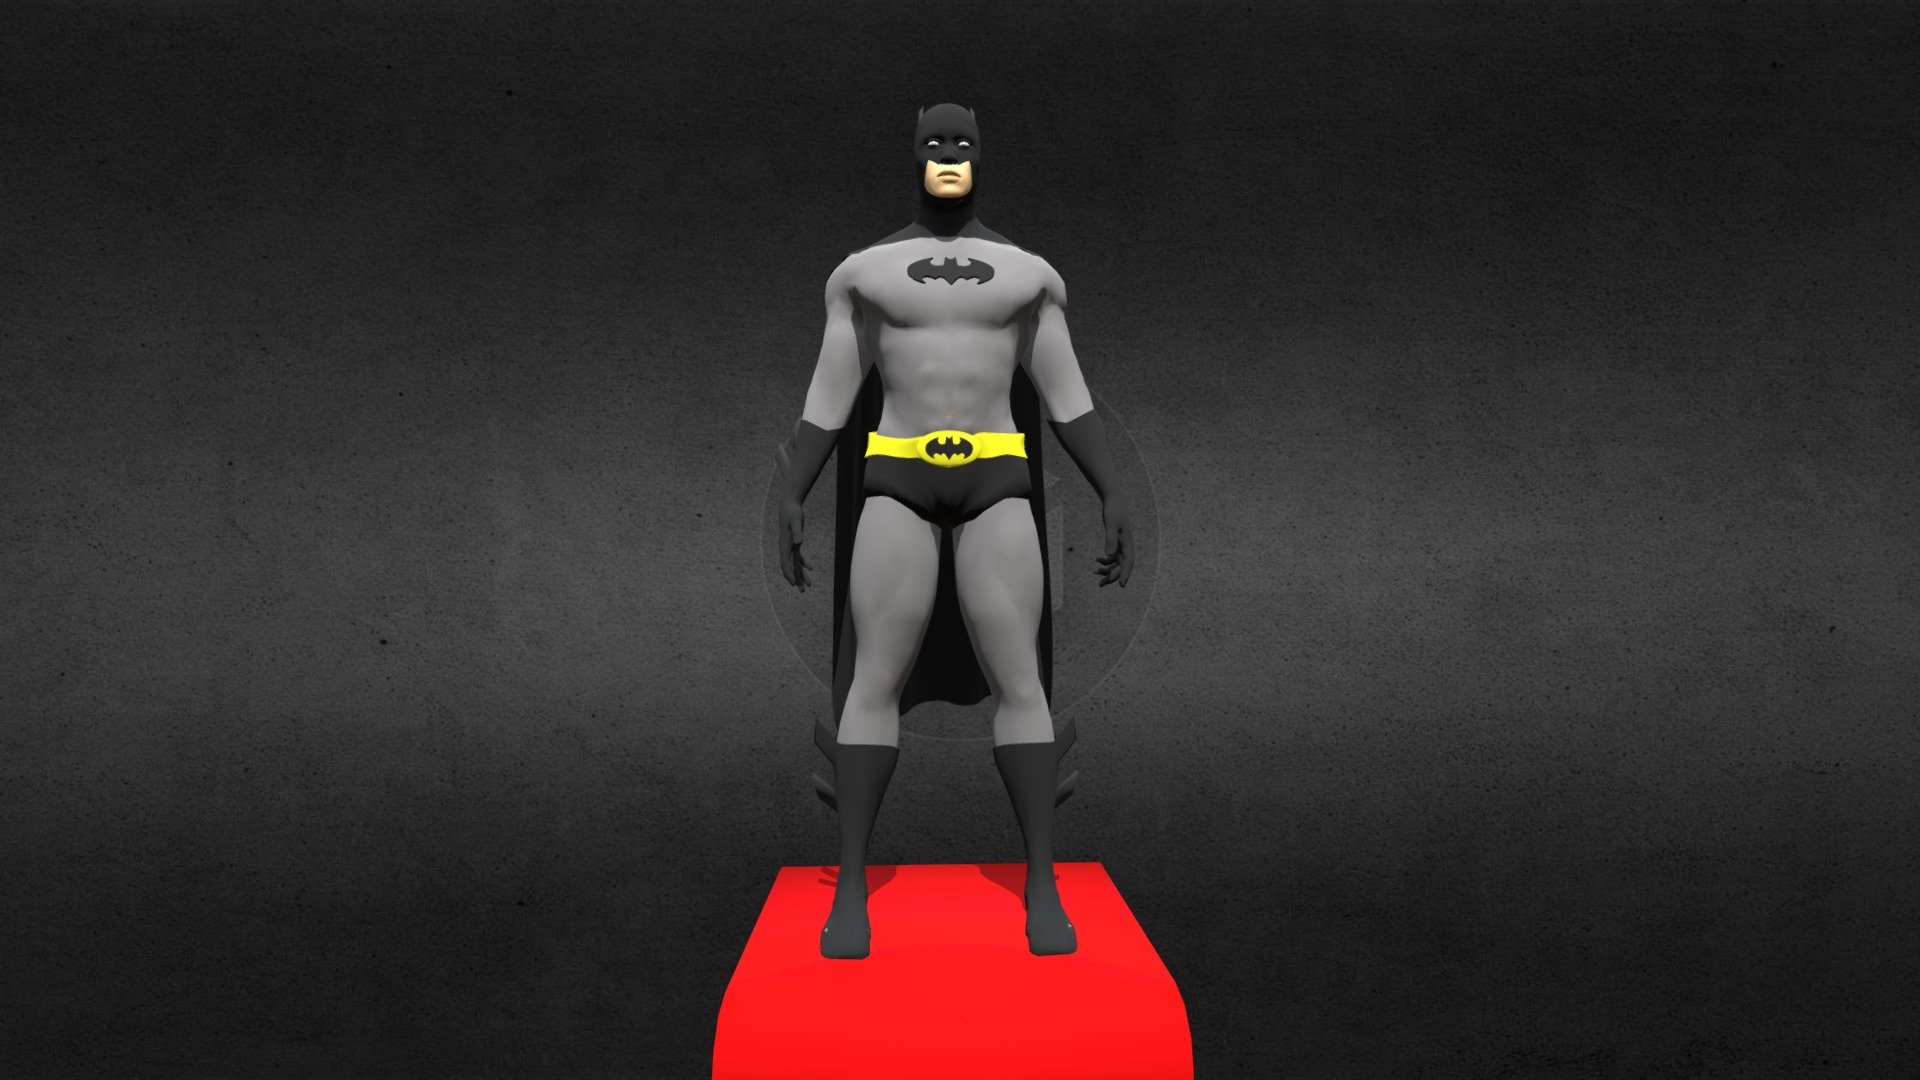 Batman Cartoon echo en blender con tableta wacom intuos - Batman Cartoon - Download Free 3D model by JMCerezo 3d model